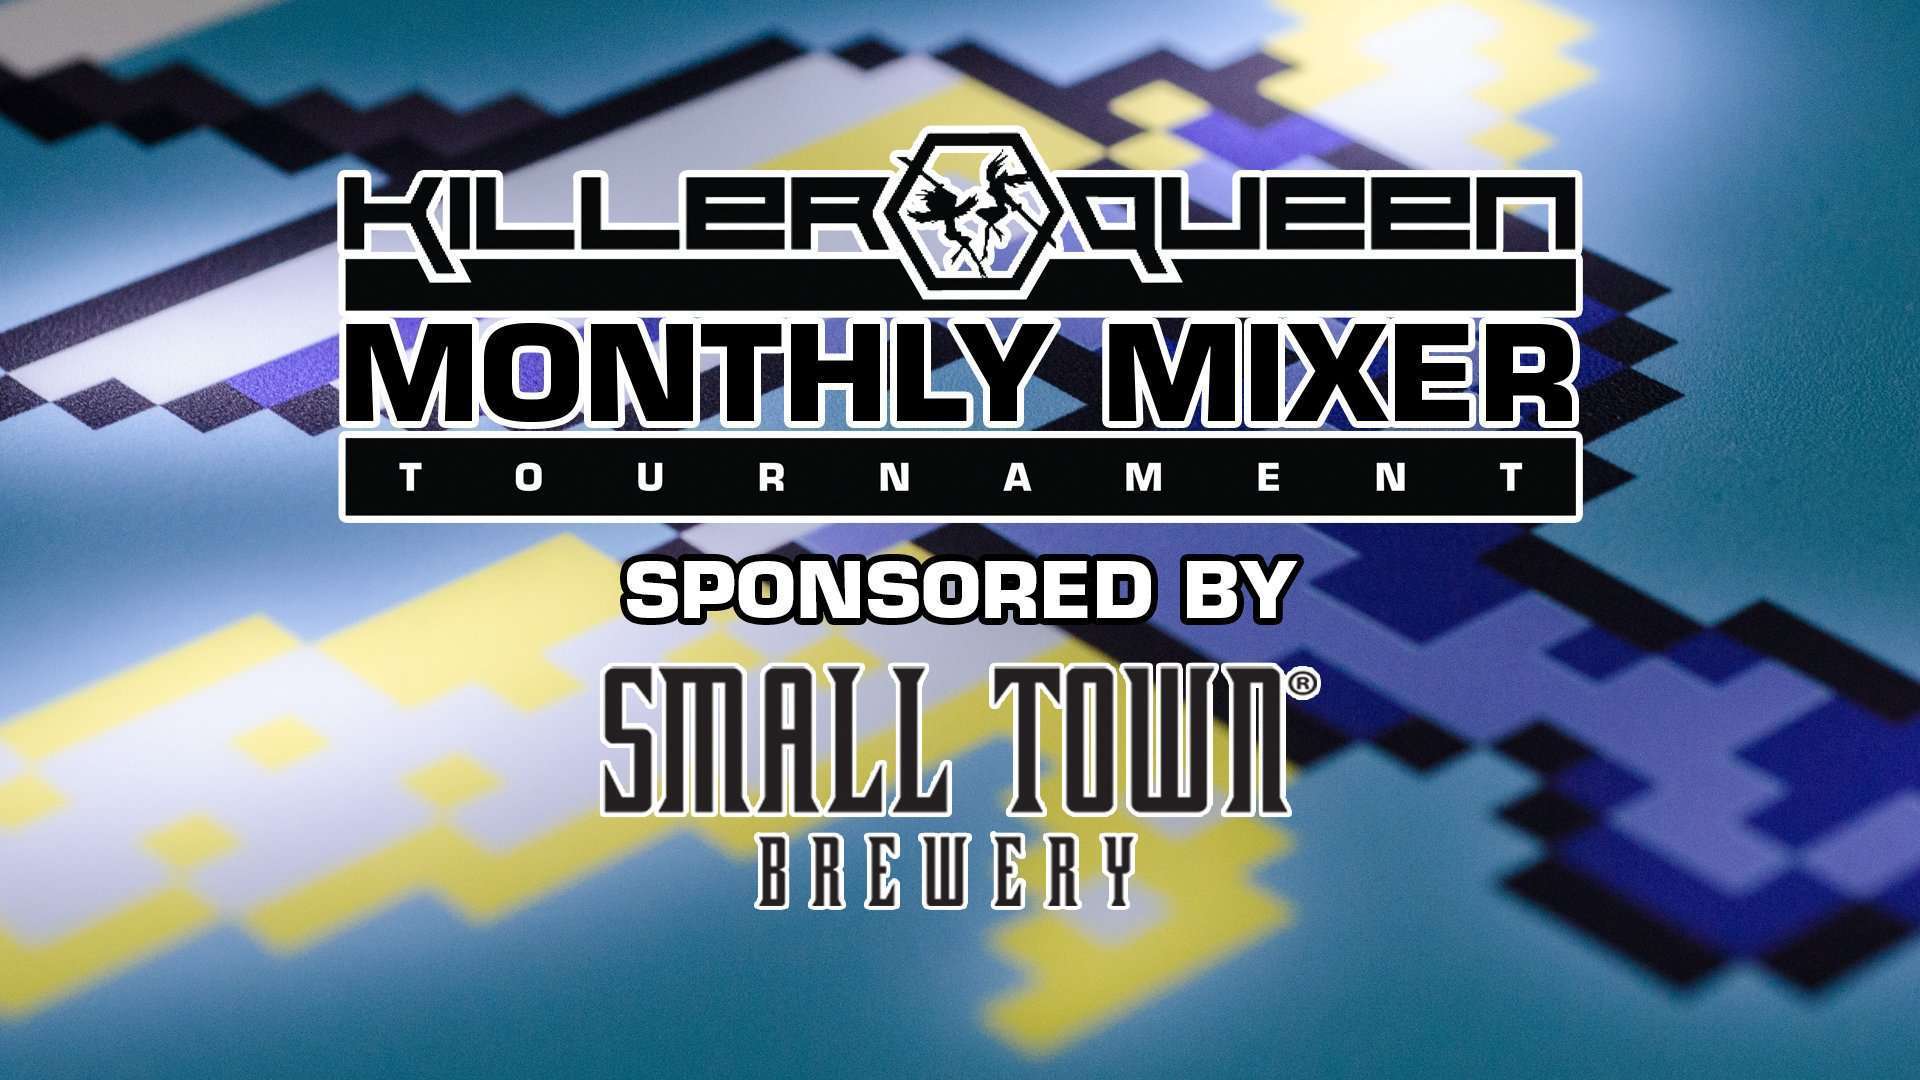 Killer Queen Monthly Mixer